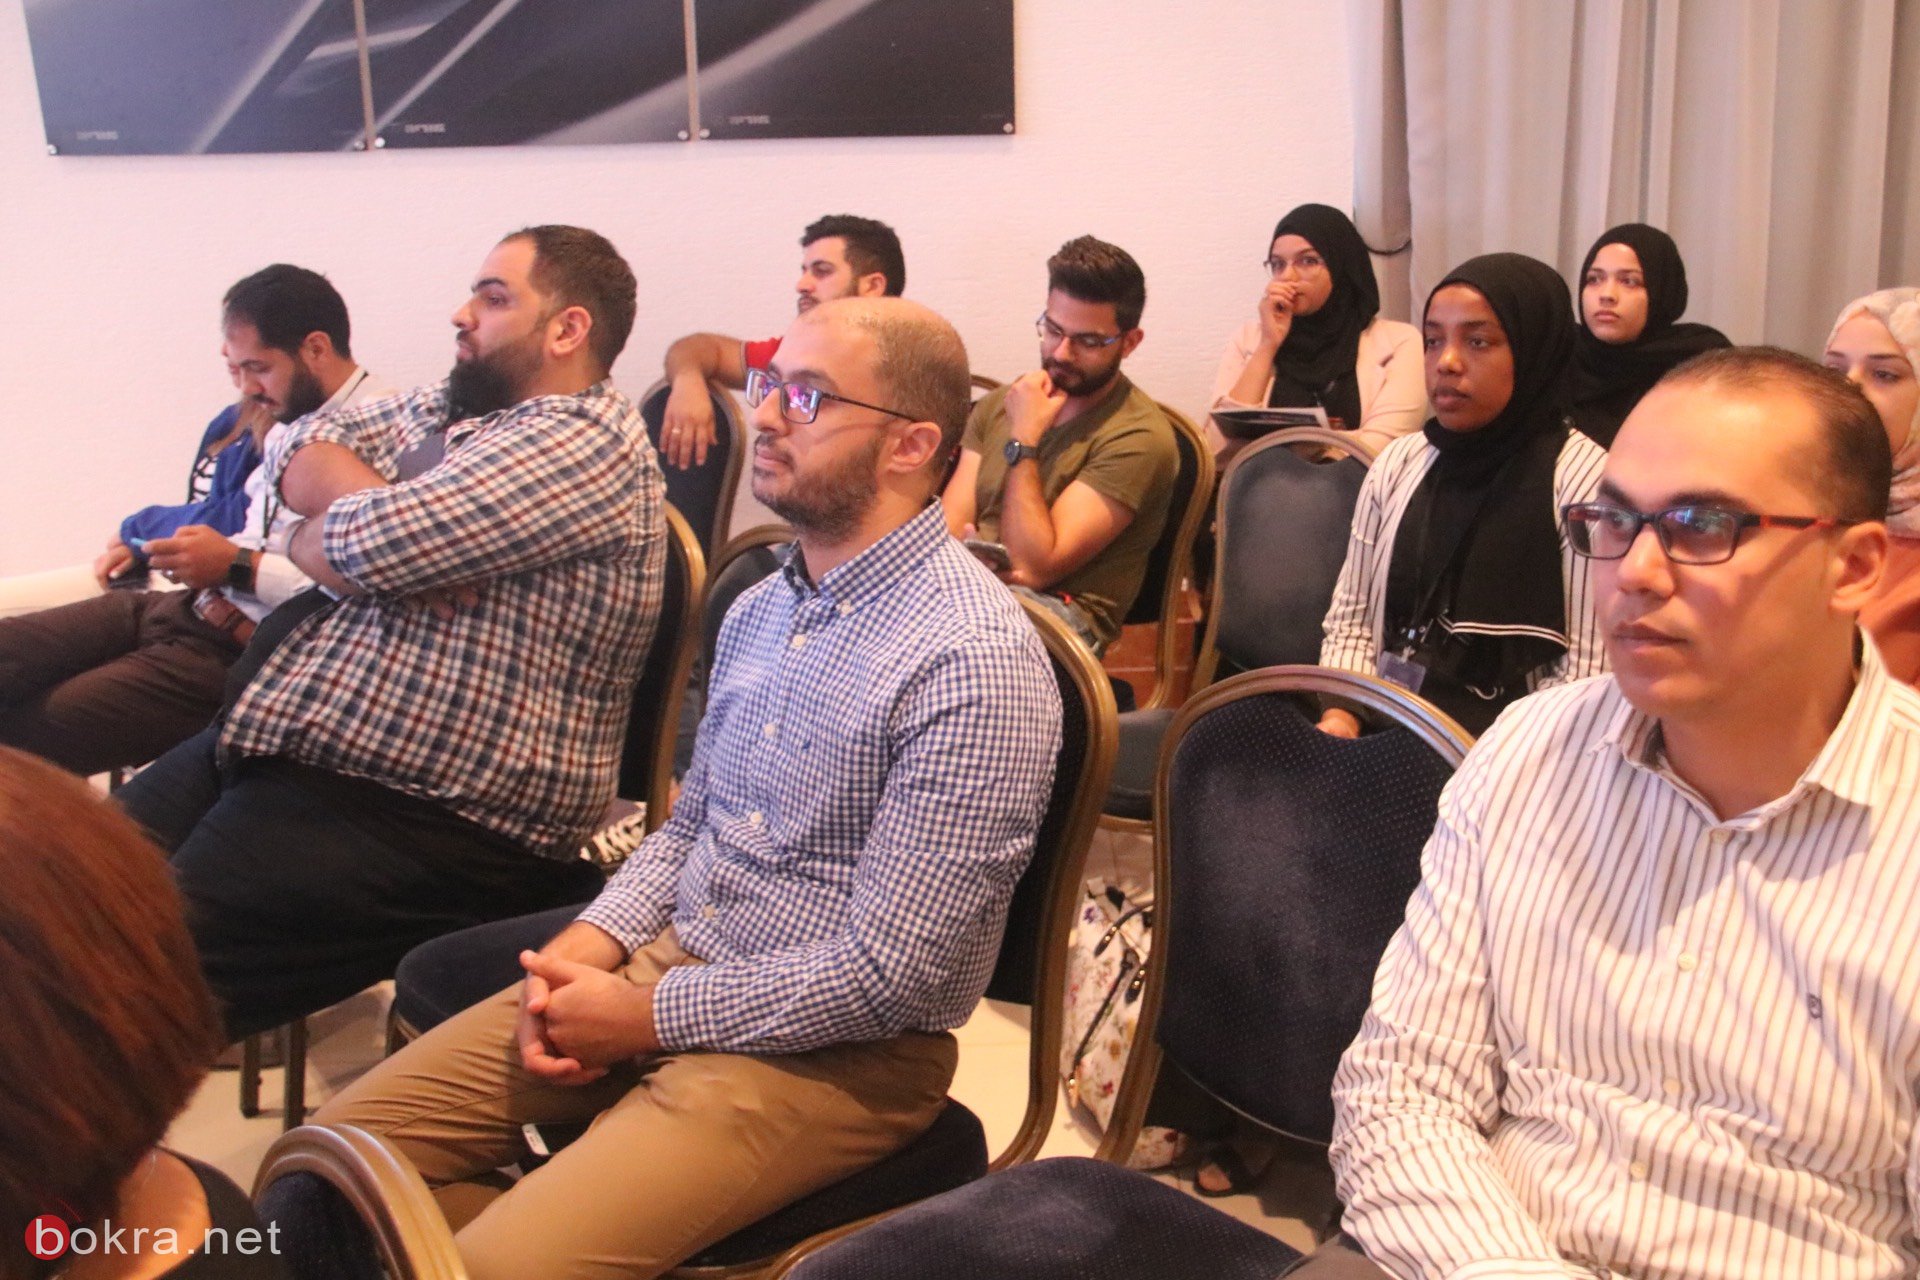 حيفا: مشاركة واسعة في مؤتمر "وصول" حول آخر التطورات في قنوات التسويق الرقمي-2